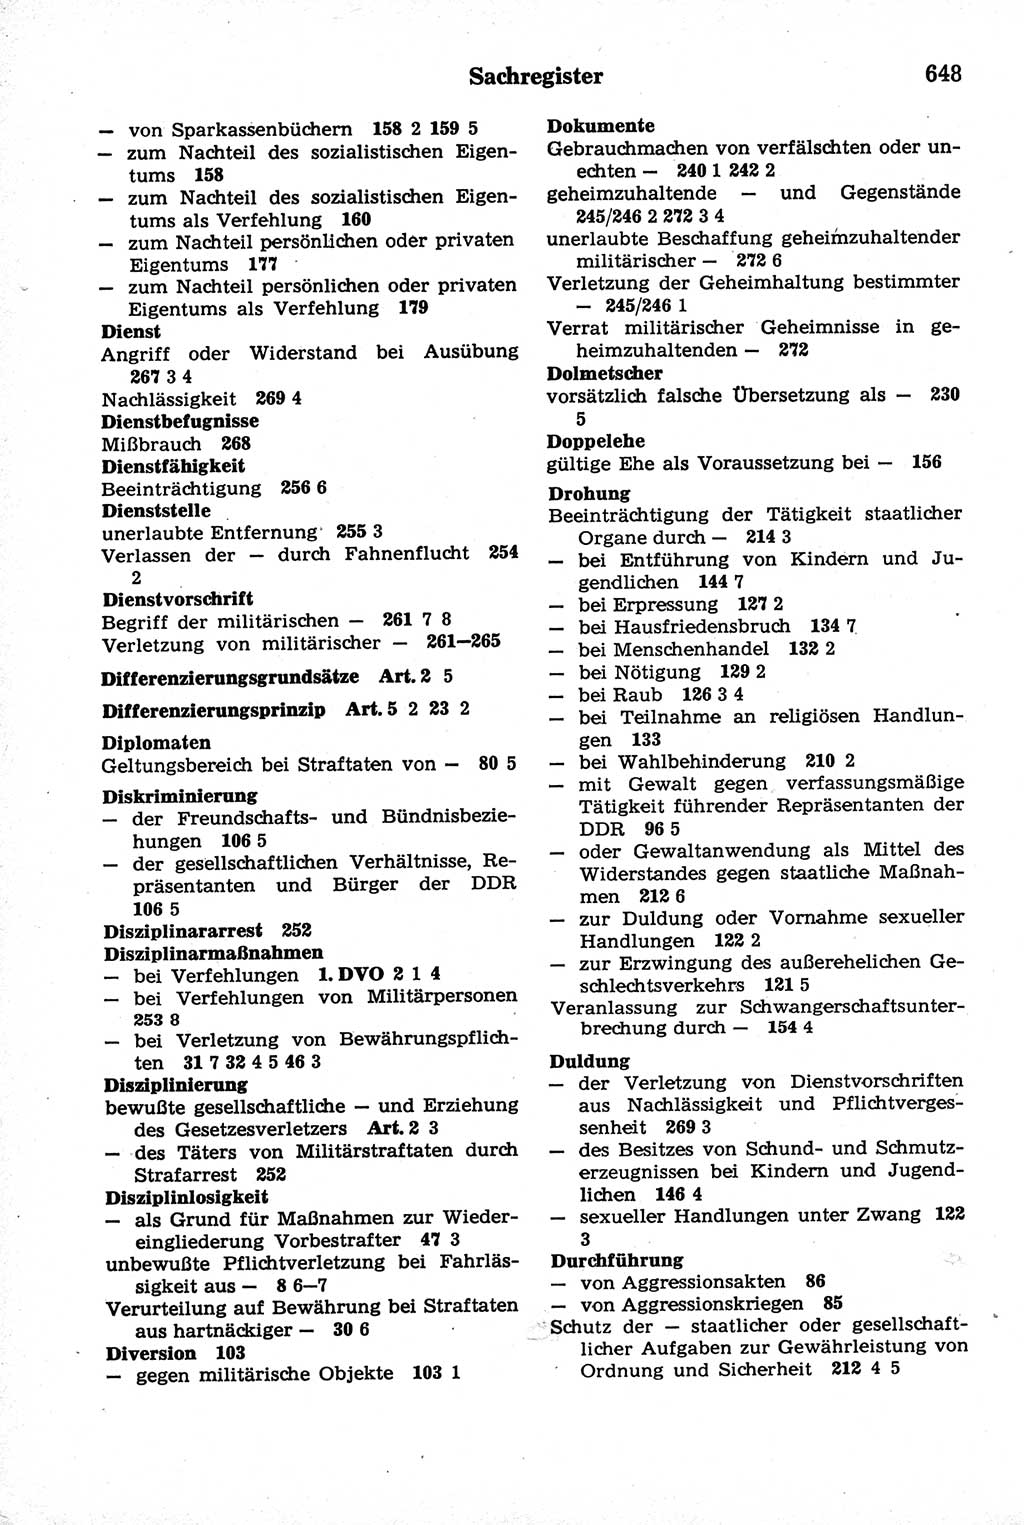 Strafrecht der Deutschen Demokratischen Republik (DDR), Kommentar zum Strafgesetzbuch (StGB) 1981, Seite 648 (Strafr. DDR Komm. StGB 1981, S. 648)